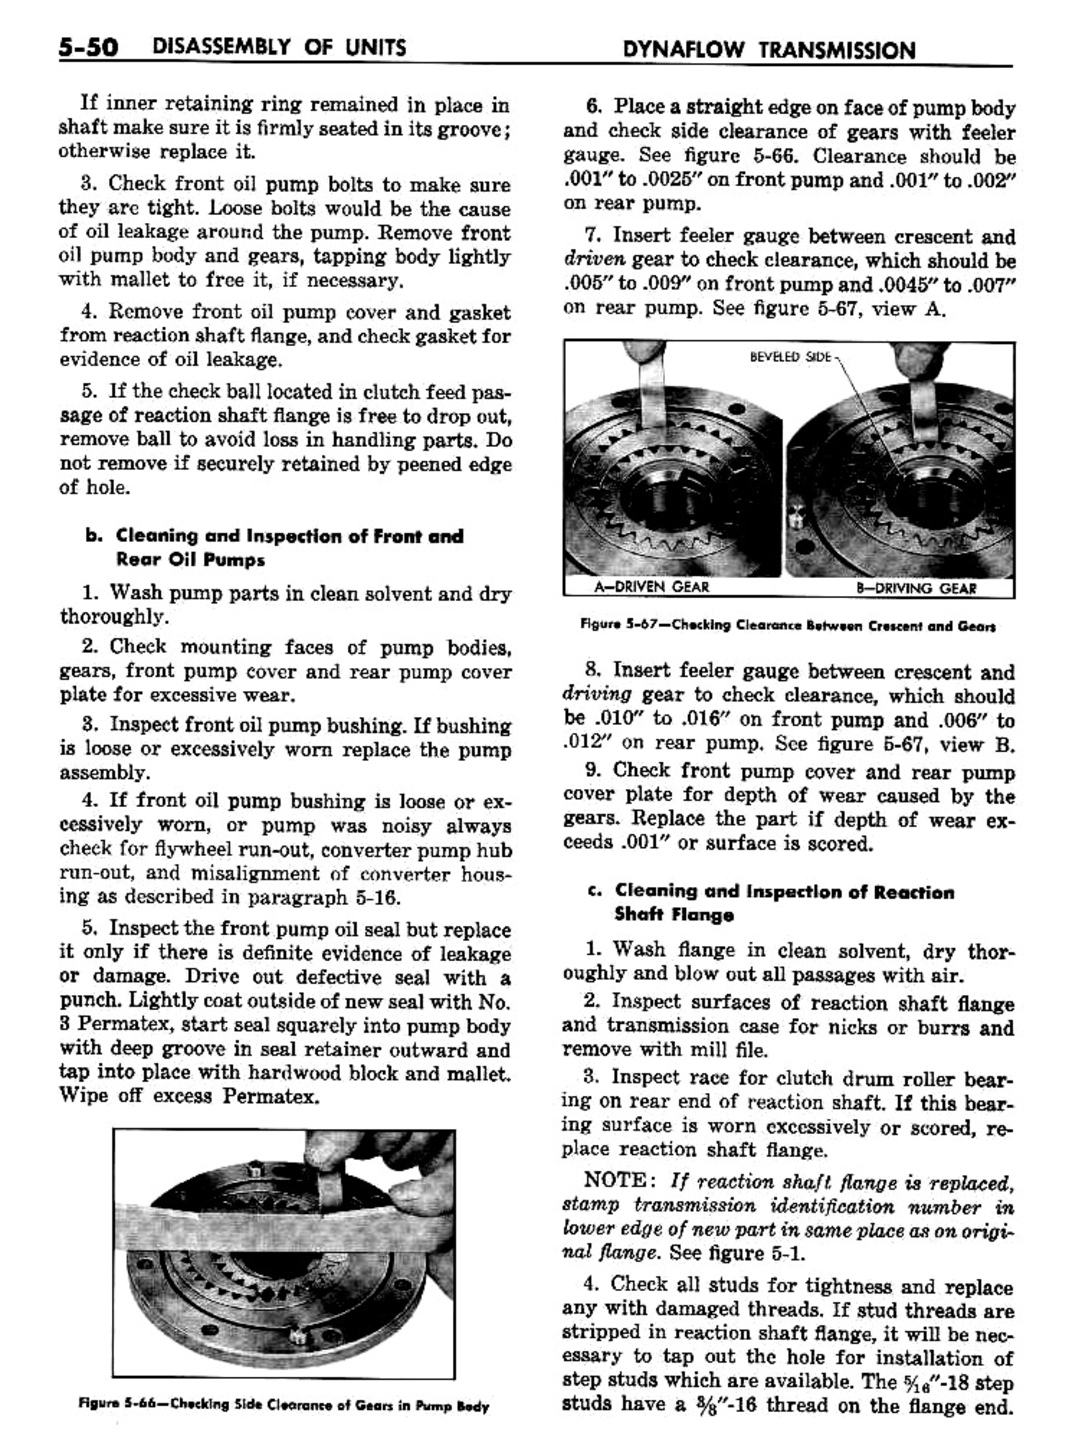 n_06 1957 Buick Shop Manual - Dynaflow-050-050.jpg